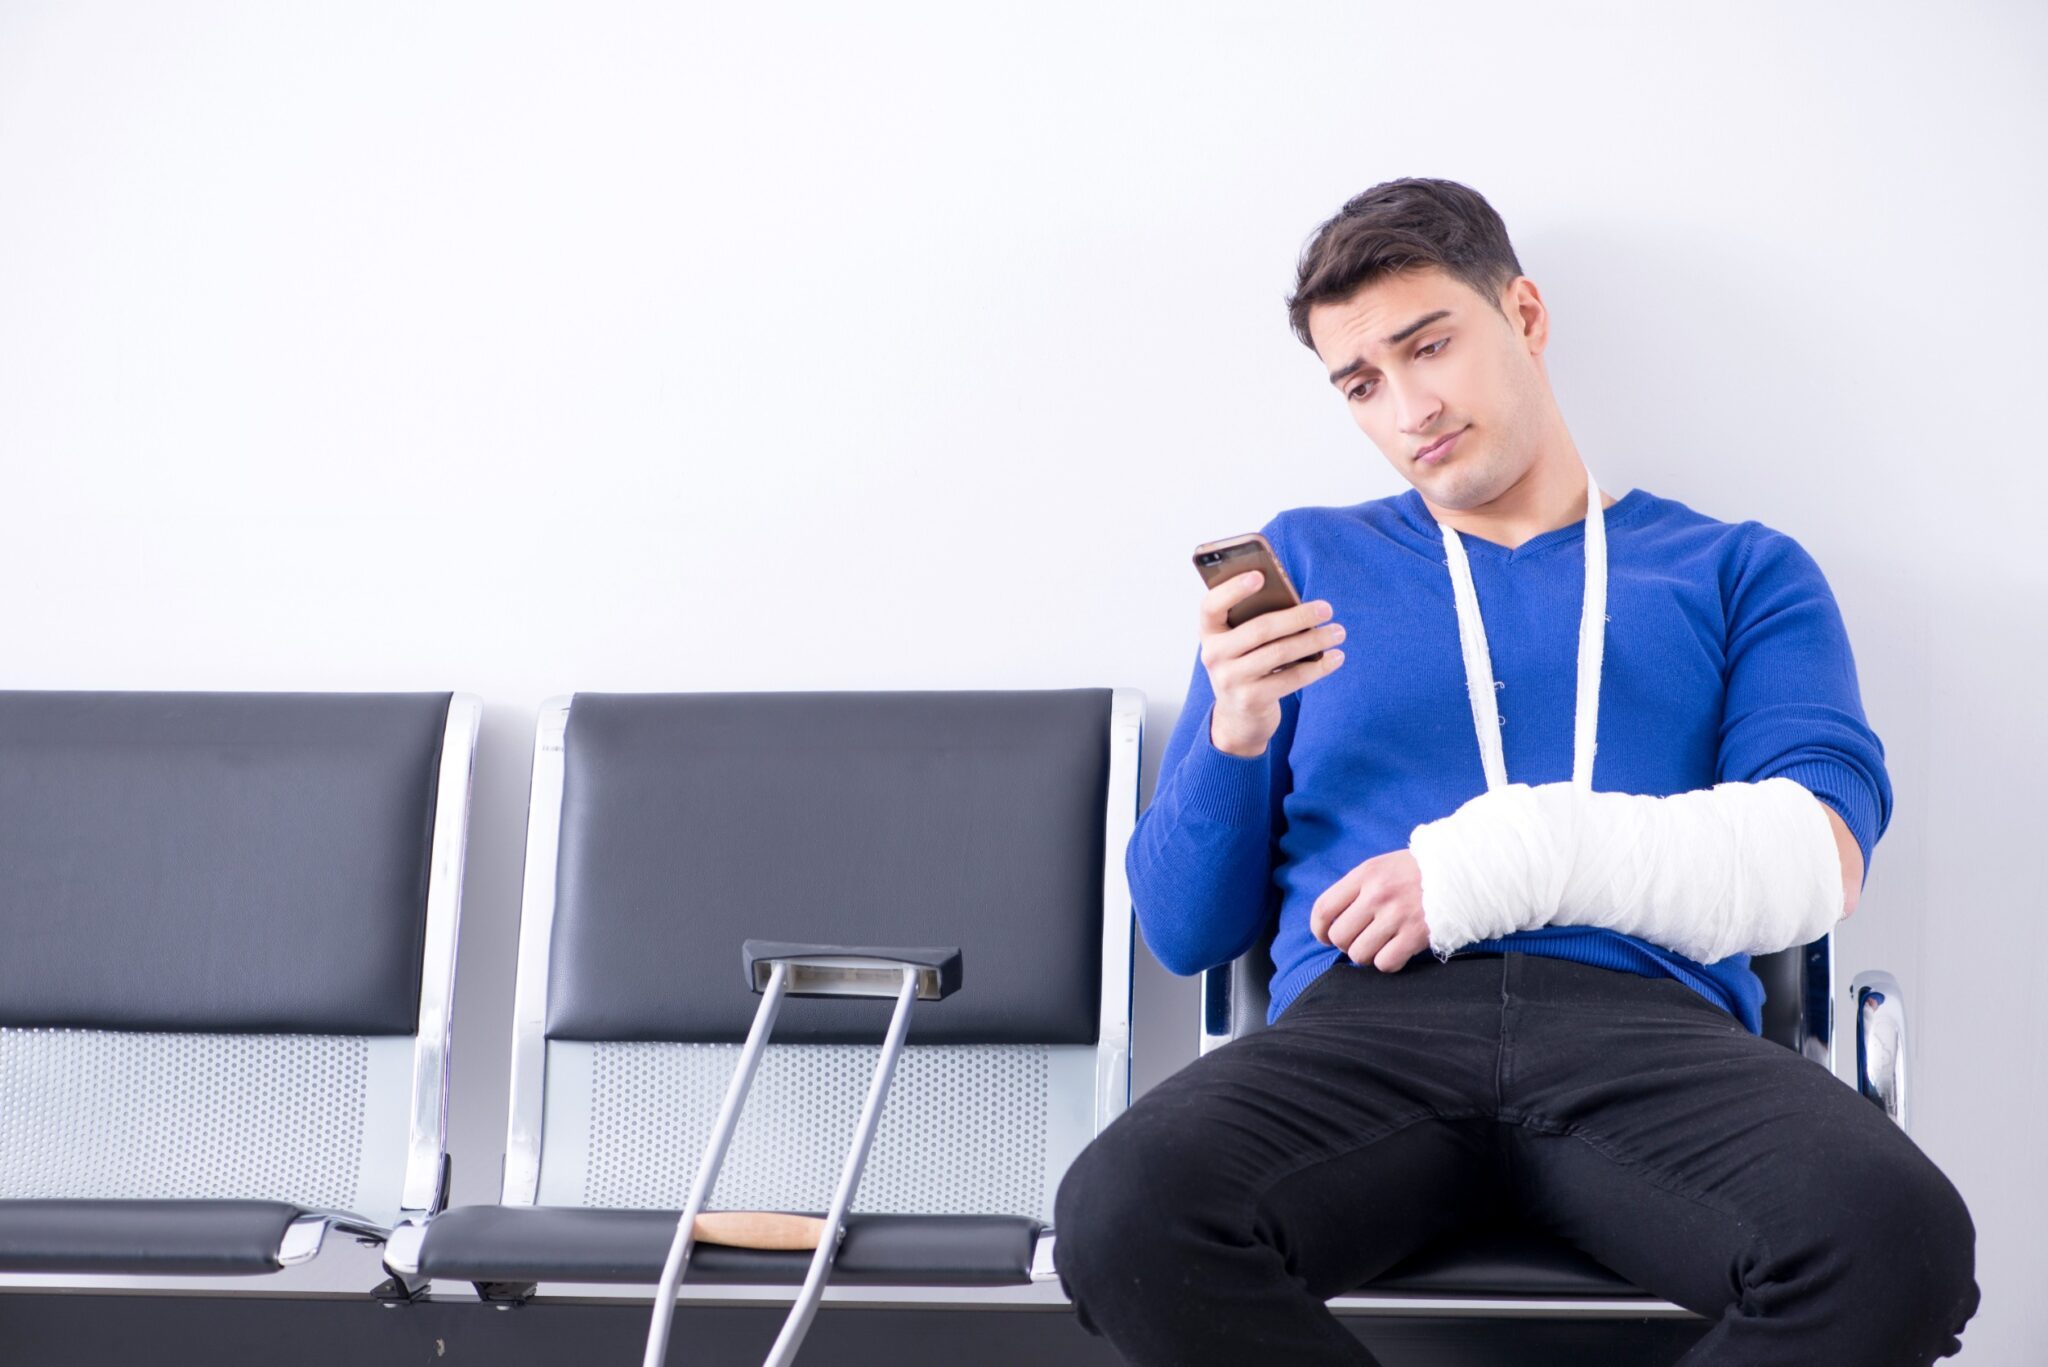 un jeune homme, avec un plâtre, attend dans une salle d'attente, consultant son téléphone